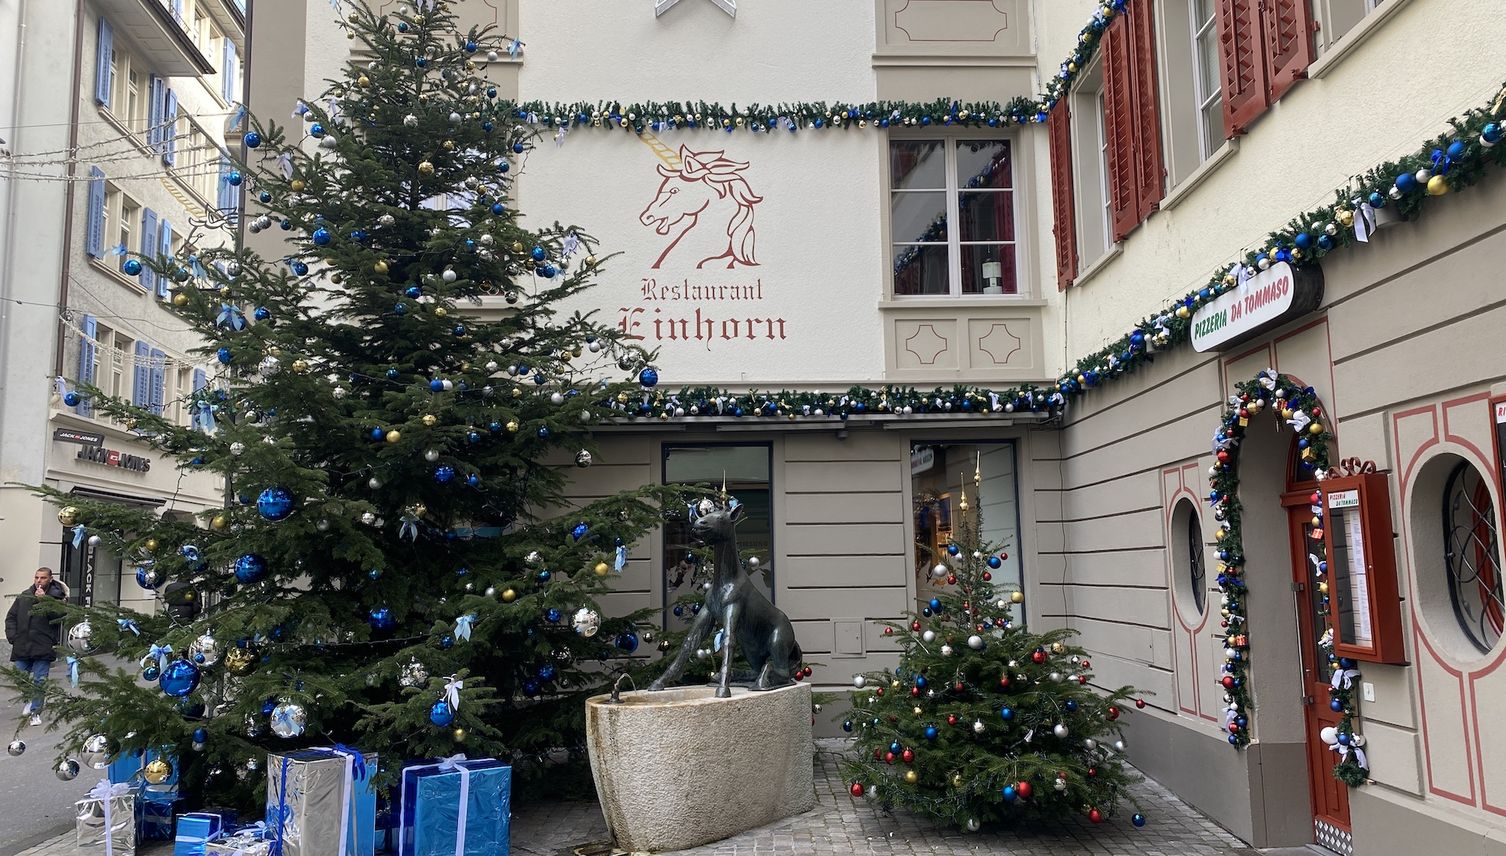 Stiftung verwandelt Restaurant Einhorn in Winterwunderland